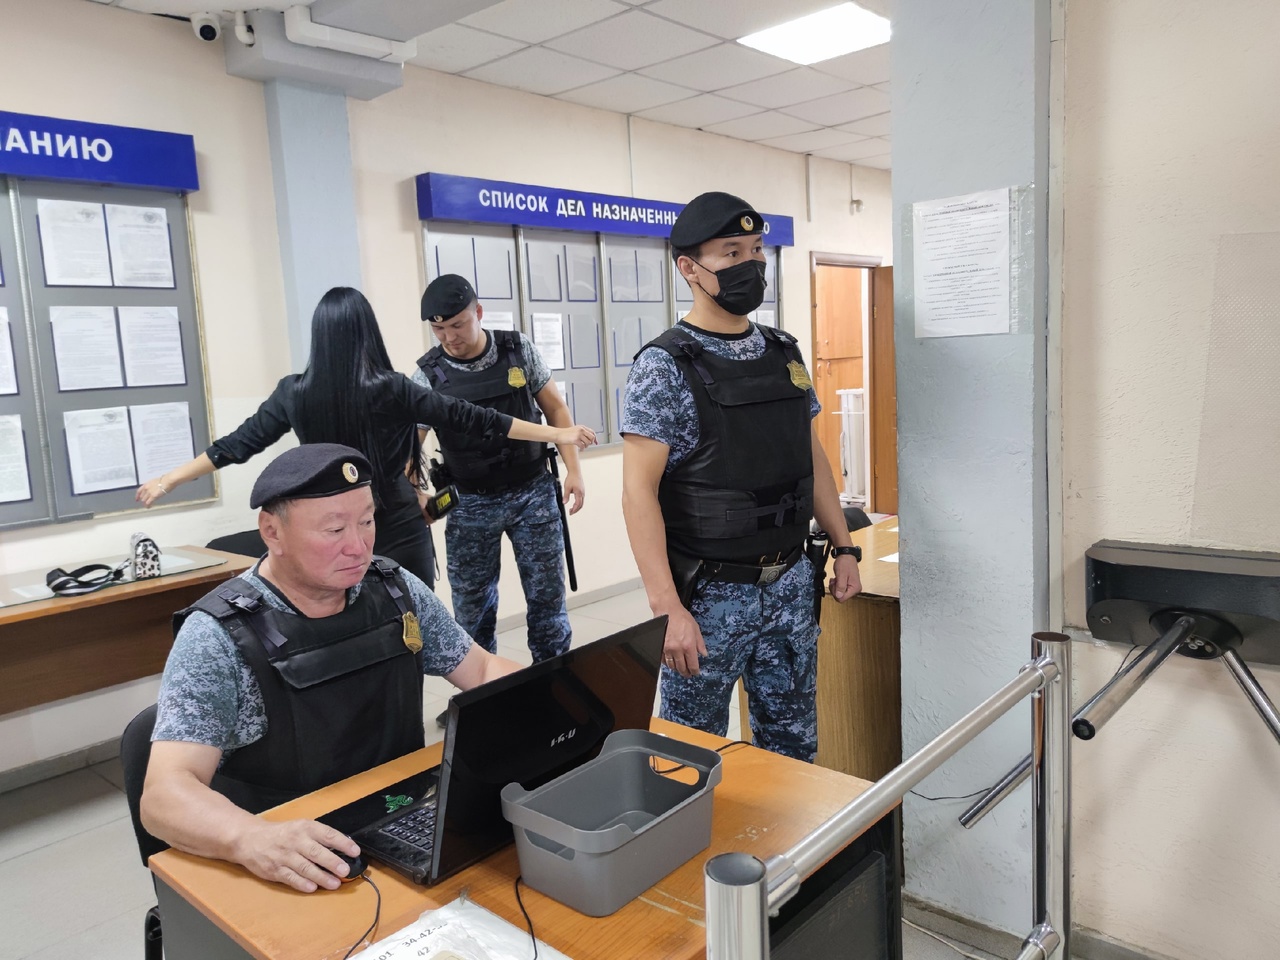 Скальпель, отвертки и огнестрел: что пытались пронести посетители в суды Якутии